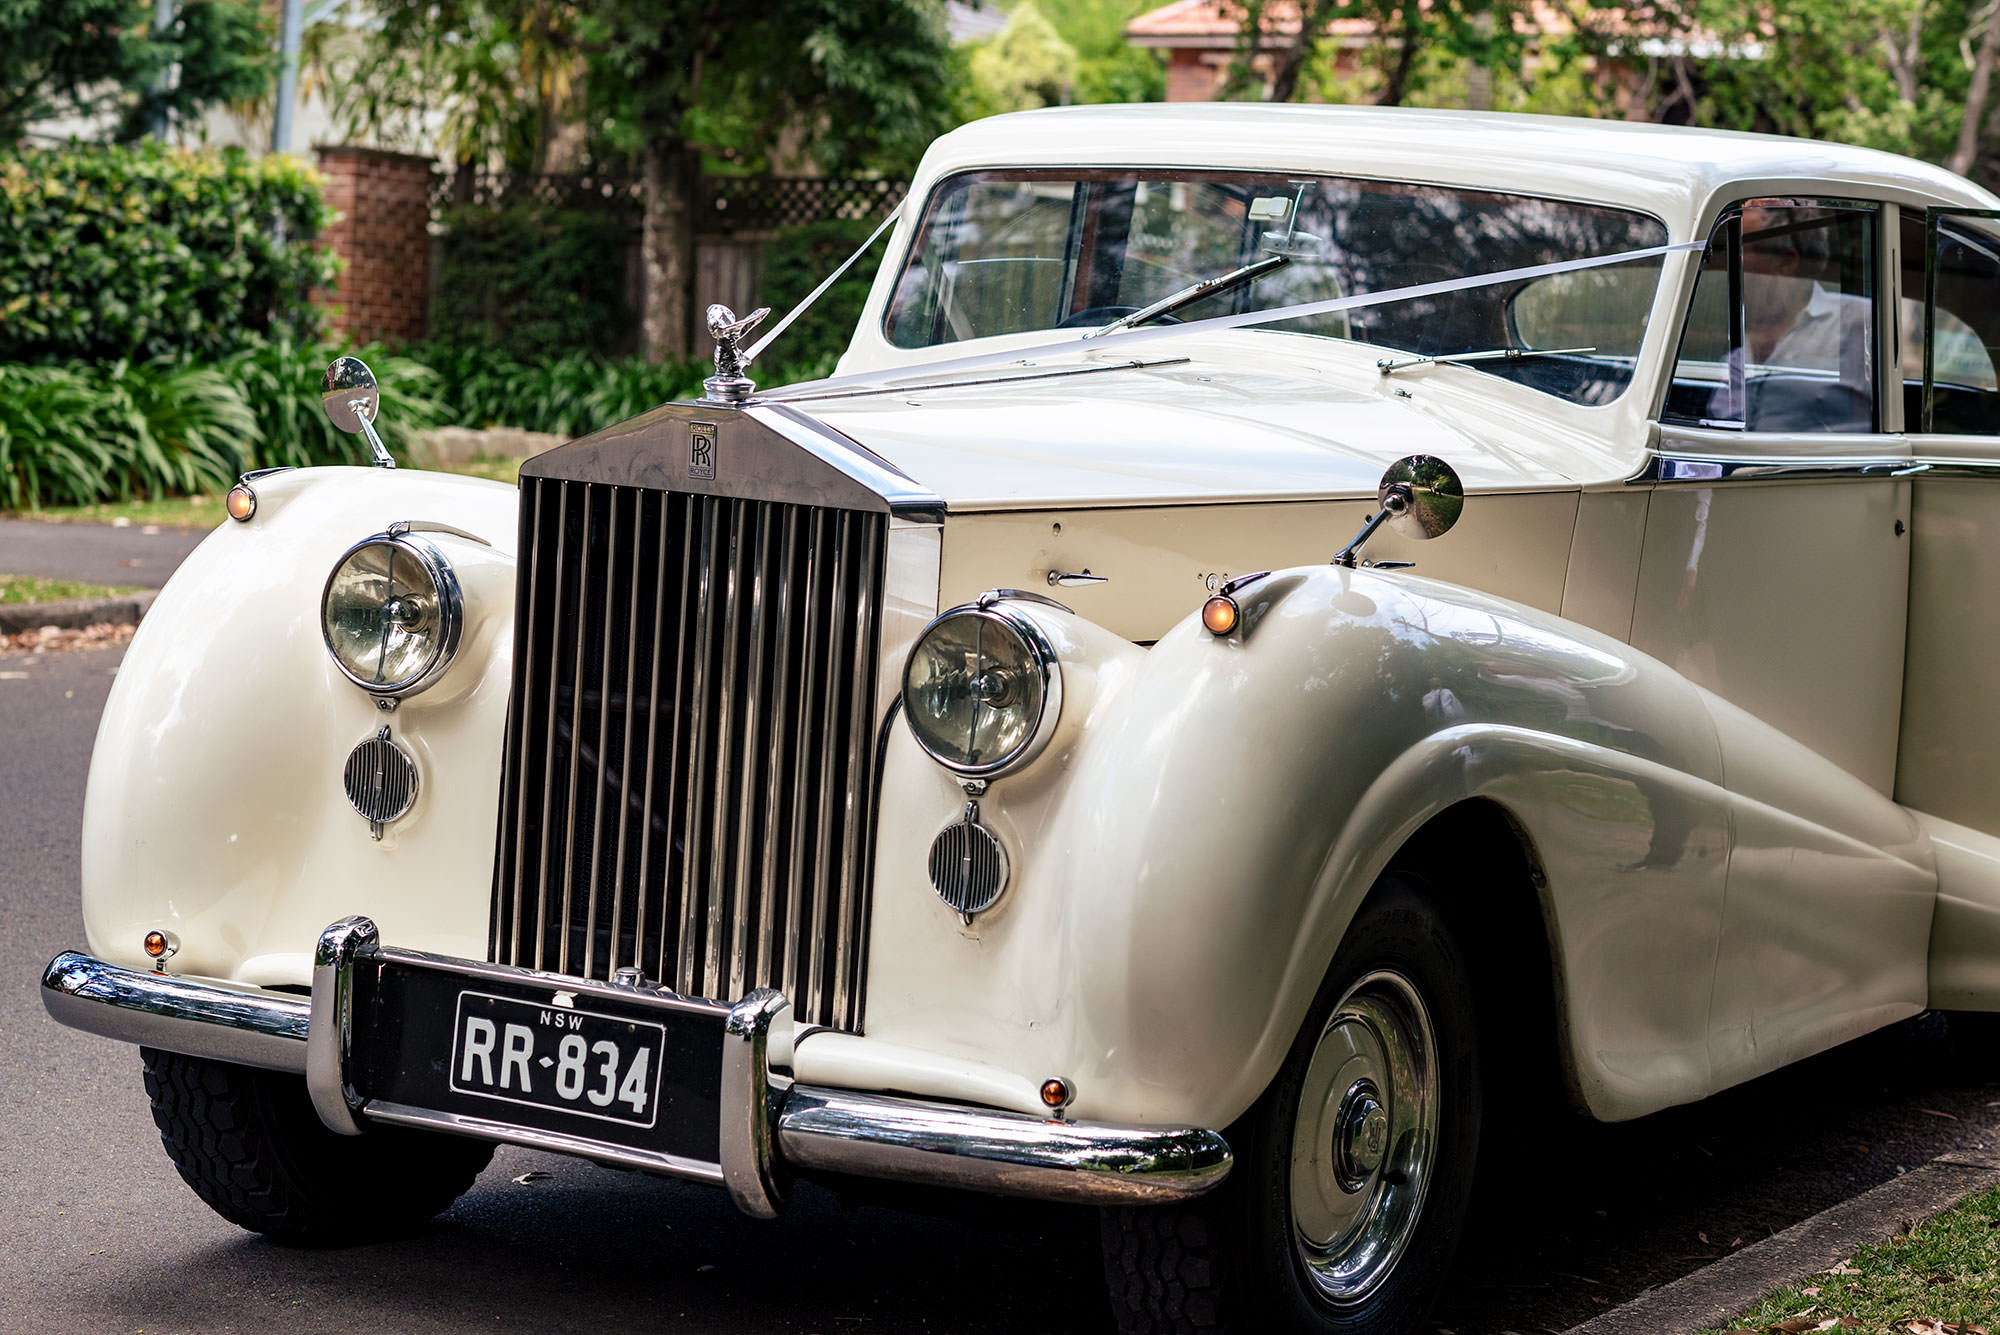 A Rolls-Royce wedding car